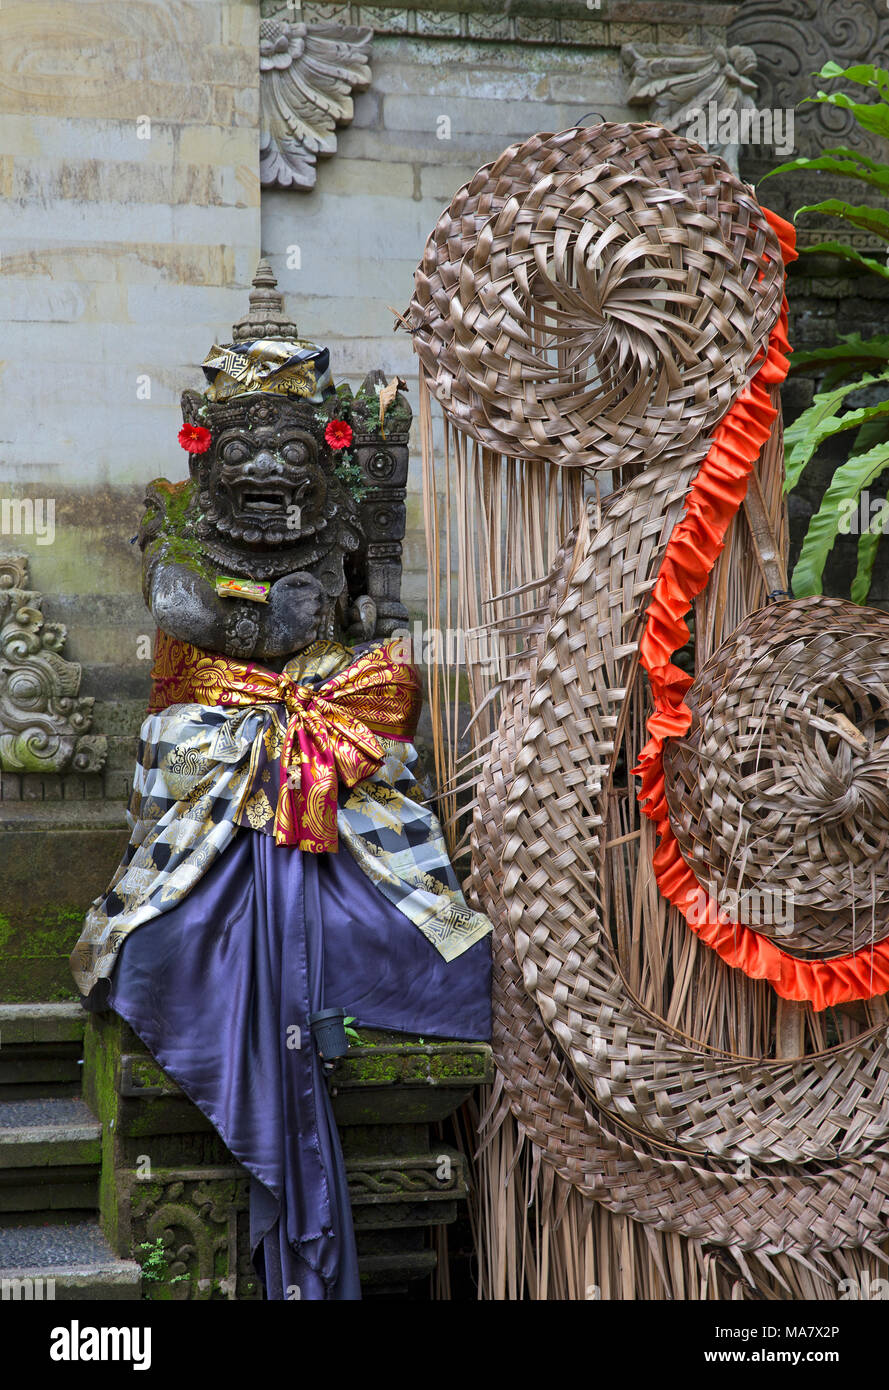 Detalles del palacio de Ubud en Bali Island Foto de stock